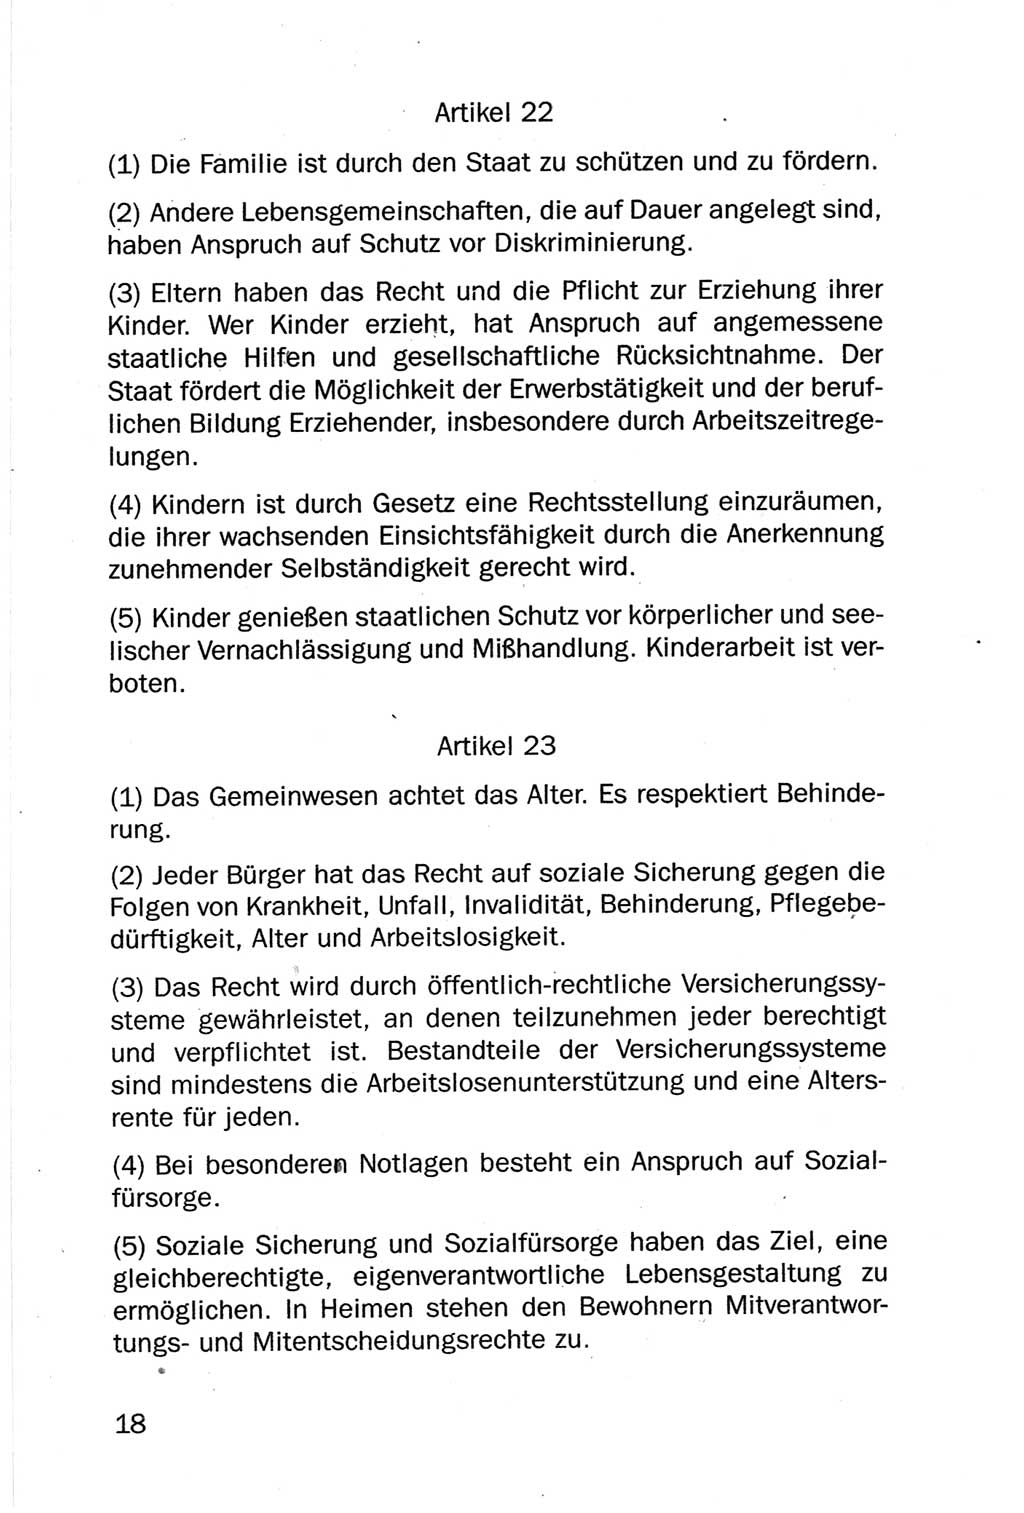 Entwurf Verfassung der Deutschen Demokratischen Republik (DDR), Arbeitsgruppe "Neue Verfassung der DDR" des Runden Tisches, Berlin 1990, Seite 18 (Entw. Verf. DDR 1990, S. 18)